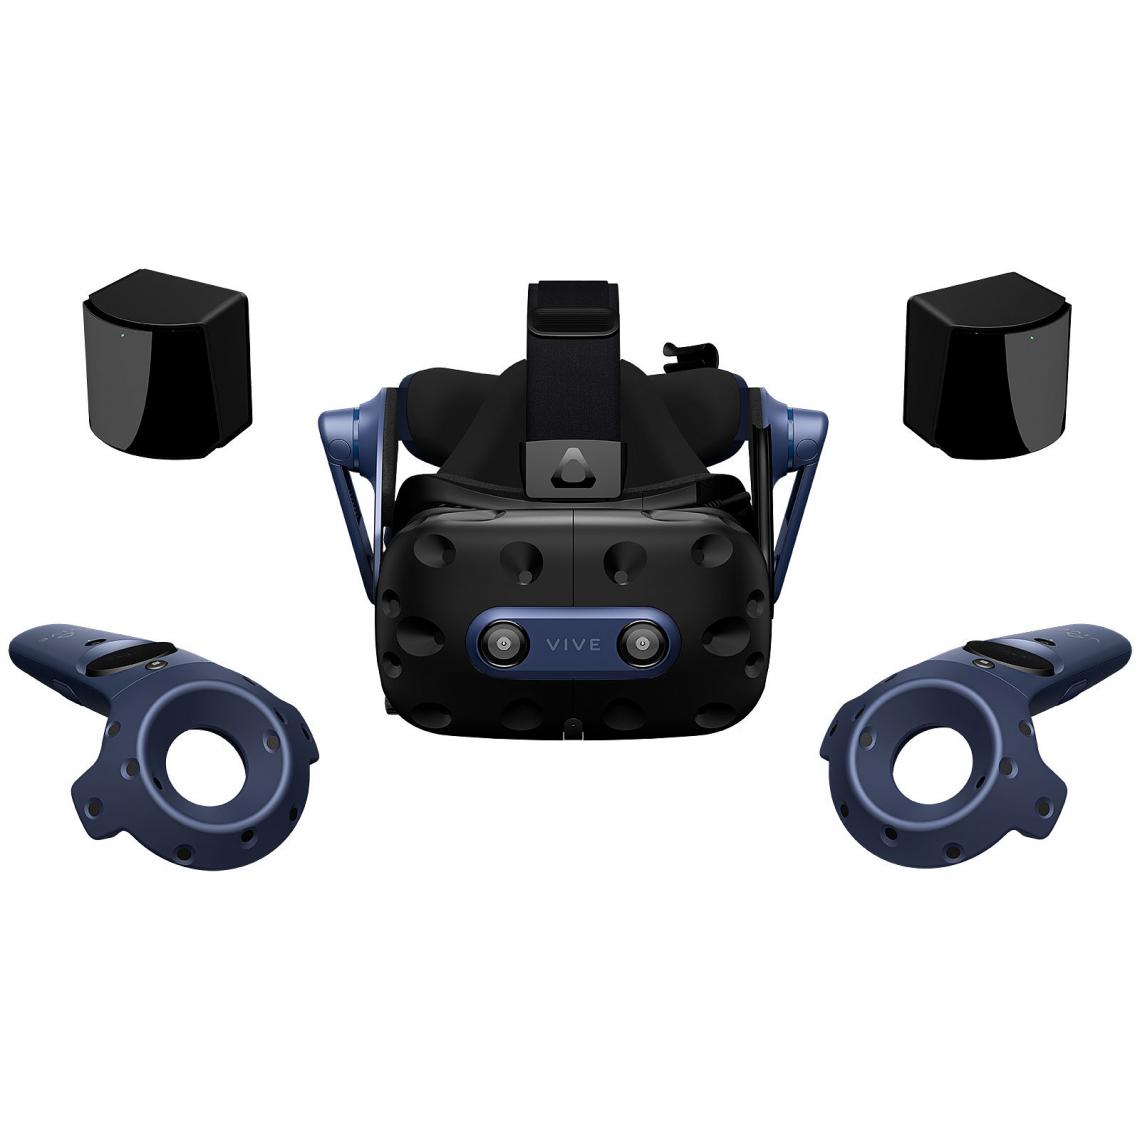 HTC - VIVE Pro 2 Complete Edition - Casques de réalité virtuelle